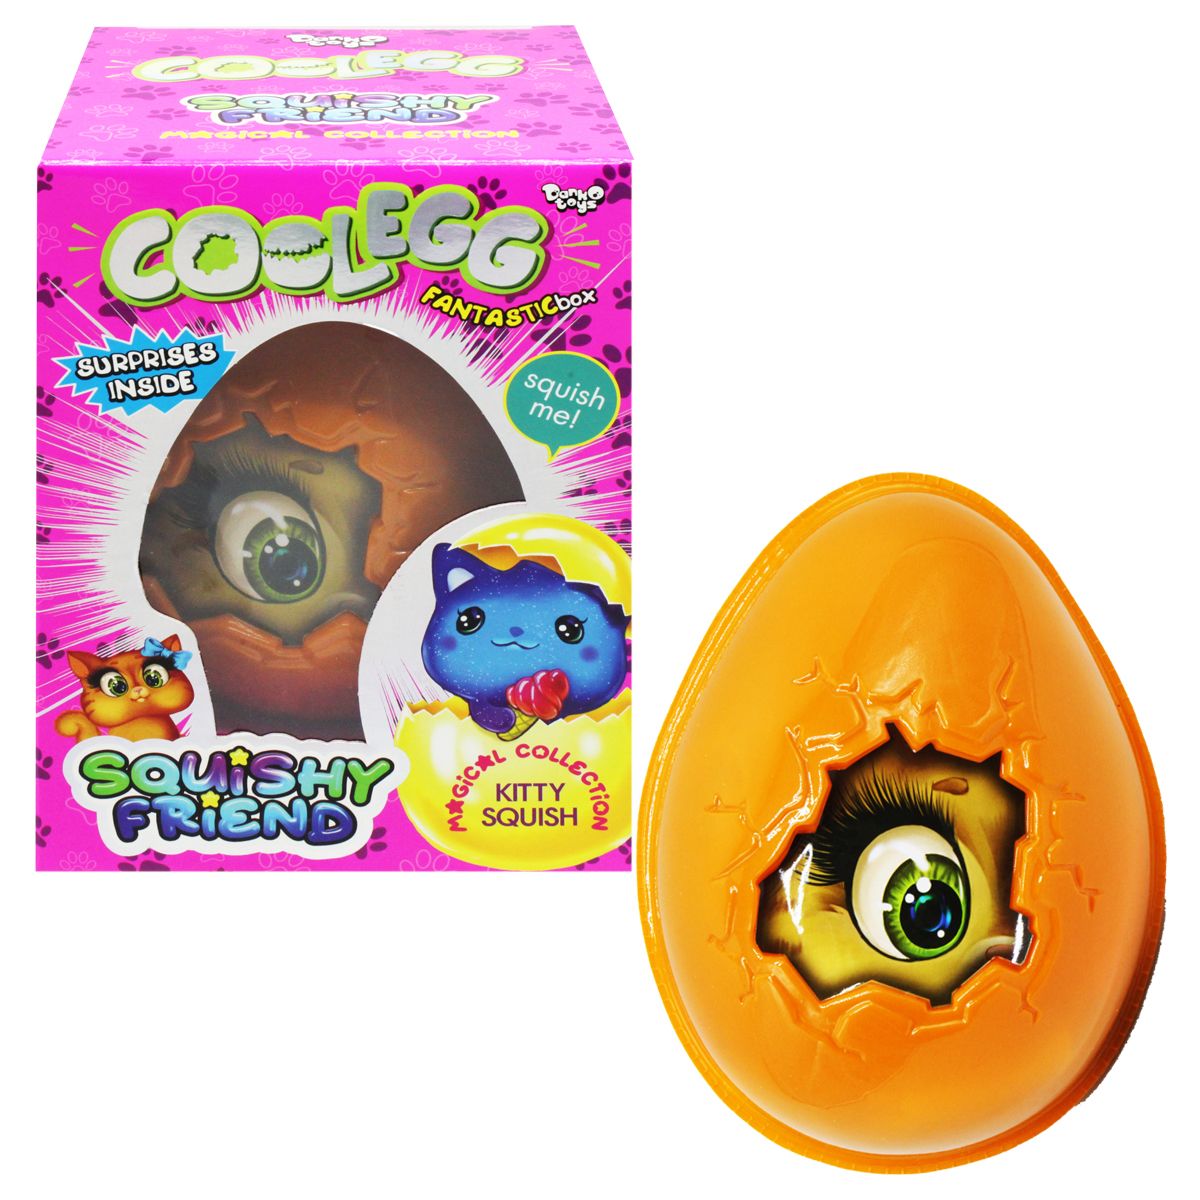 Набор для креативного творчества "Cool Egg", вид 3